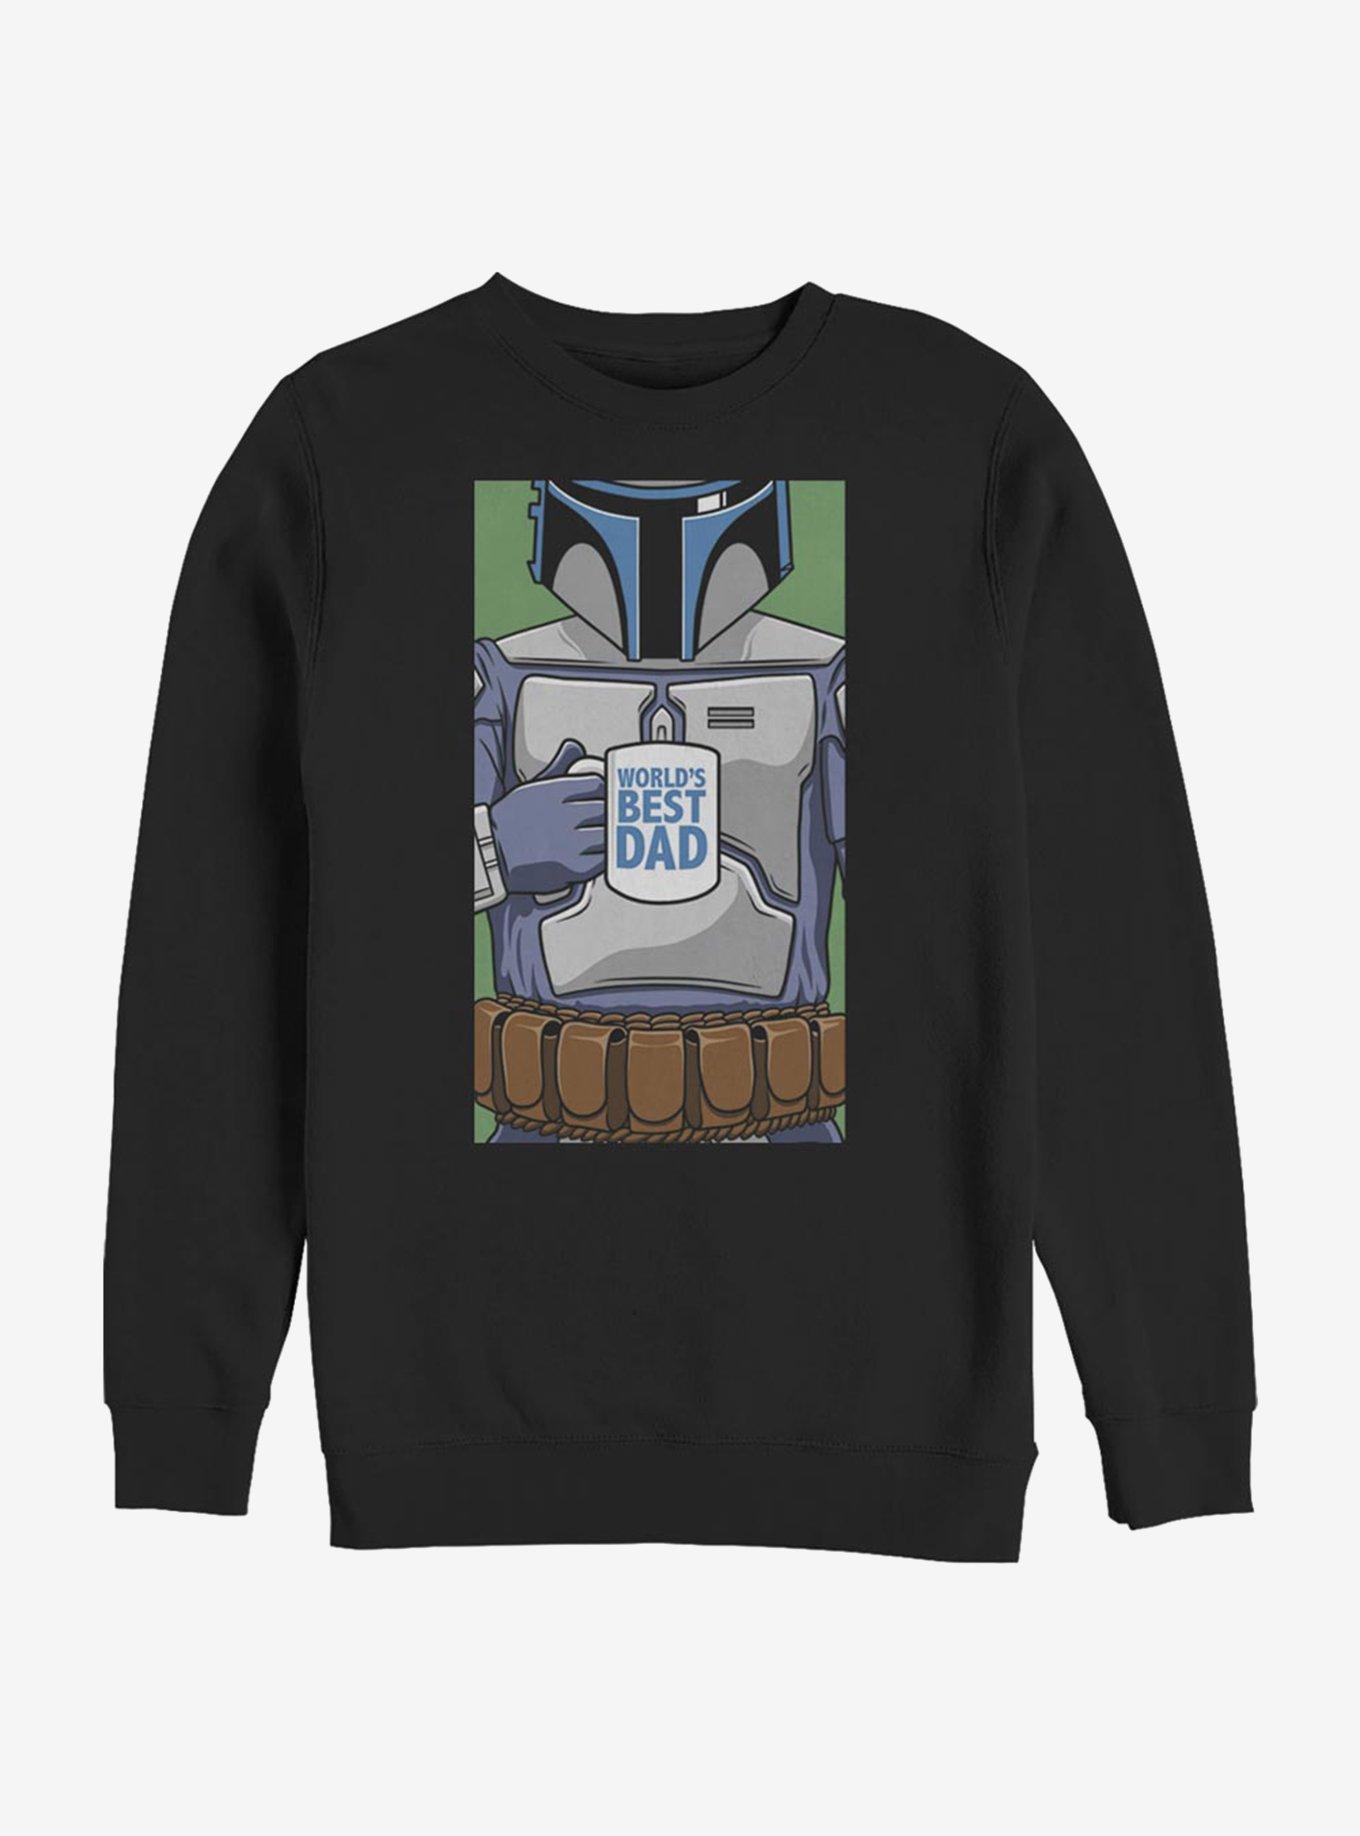 Star Wars World's Best Dad Sweatshirt